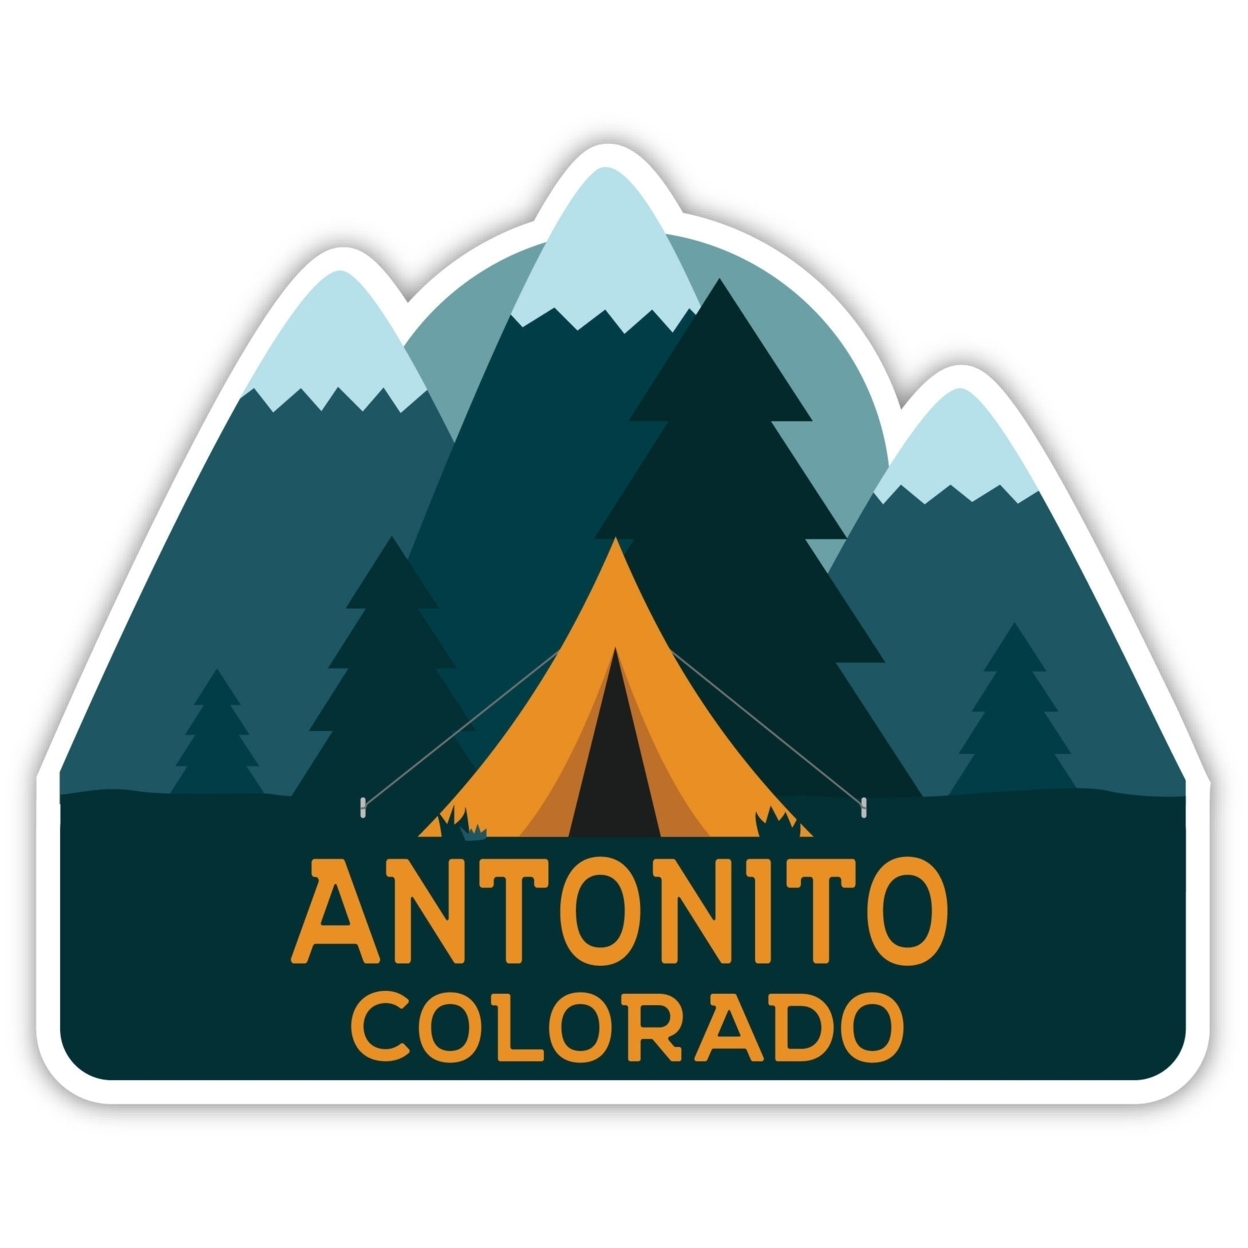 Antonito Colorado Souvenir Decorative Stickers (Choose Theme And Size) - Single Unit, 10-Inch, Tent